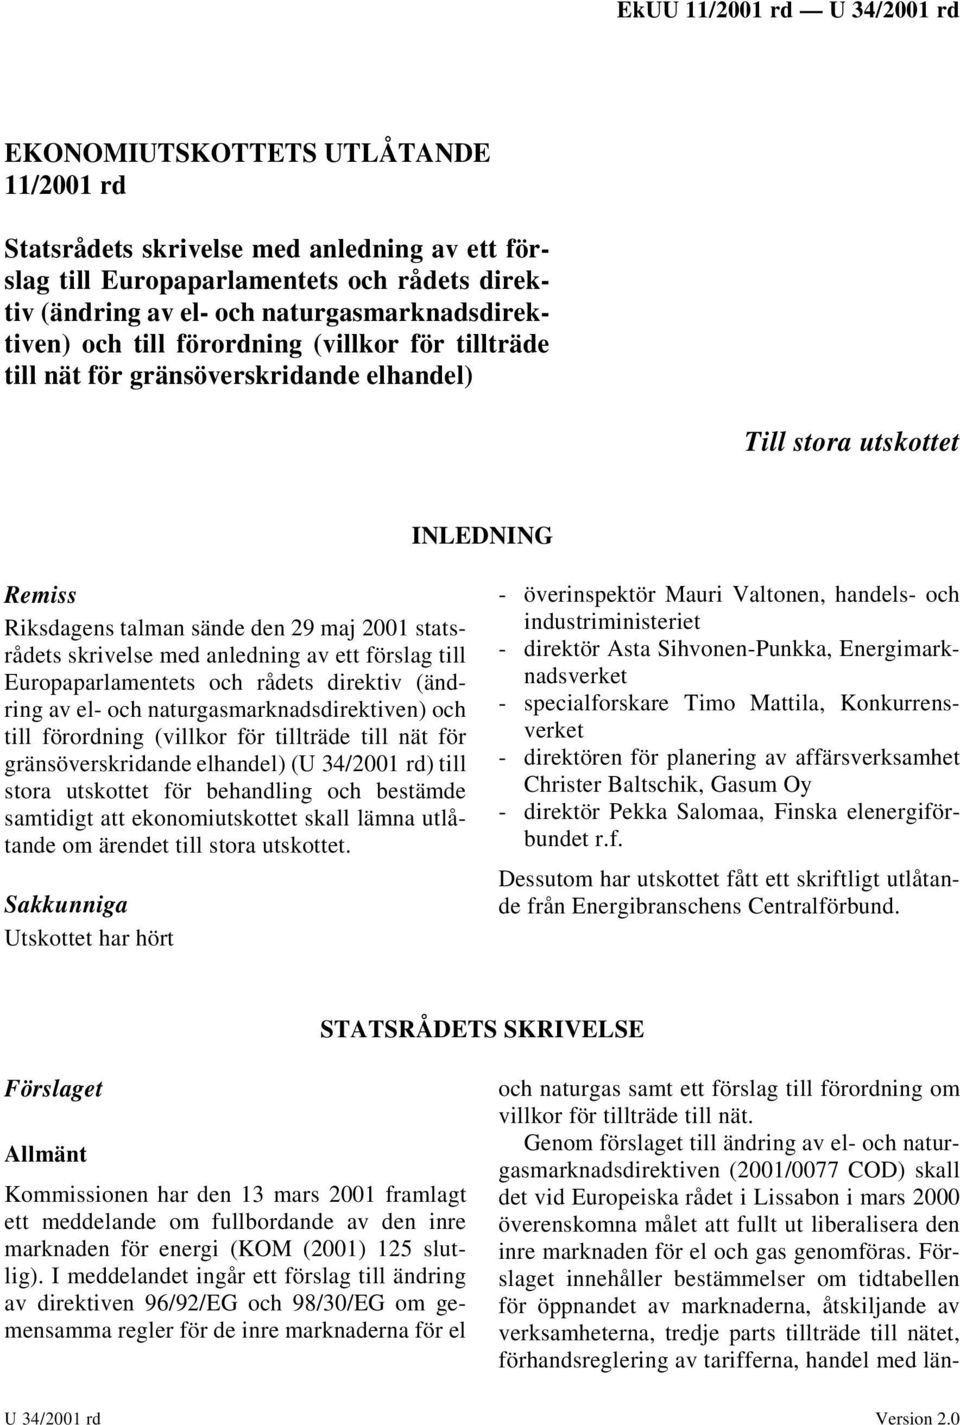 förslag till Europaparlamentets och rådets direktiv (ändring av el- och naturgasmarknadsdirektiven) och till förordning (villkor för tillträde till nät för gränsöverskridande elhandel) (U 34/2001 rd)